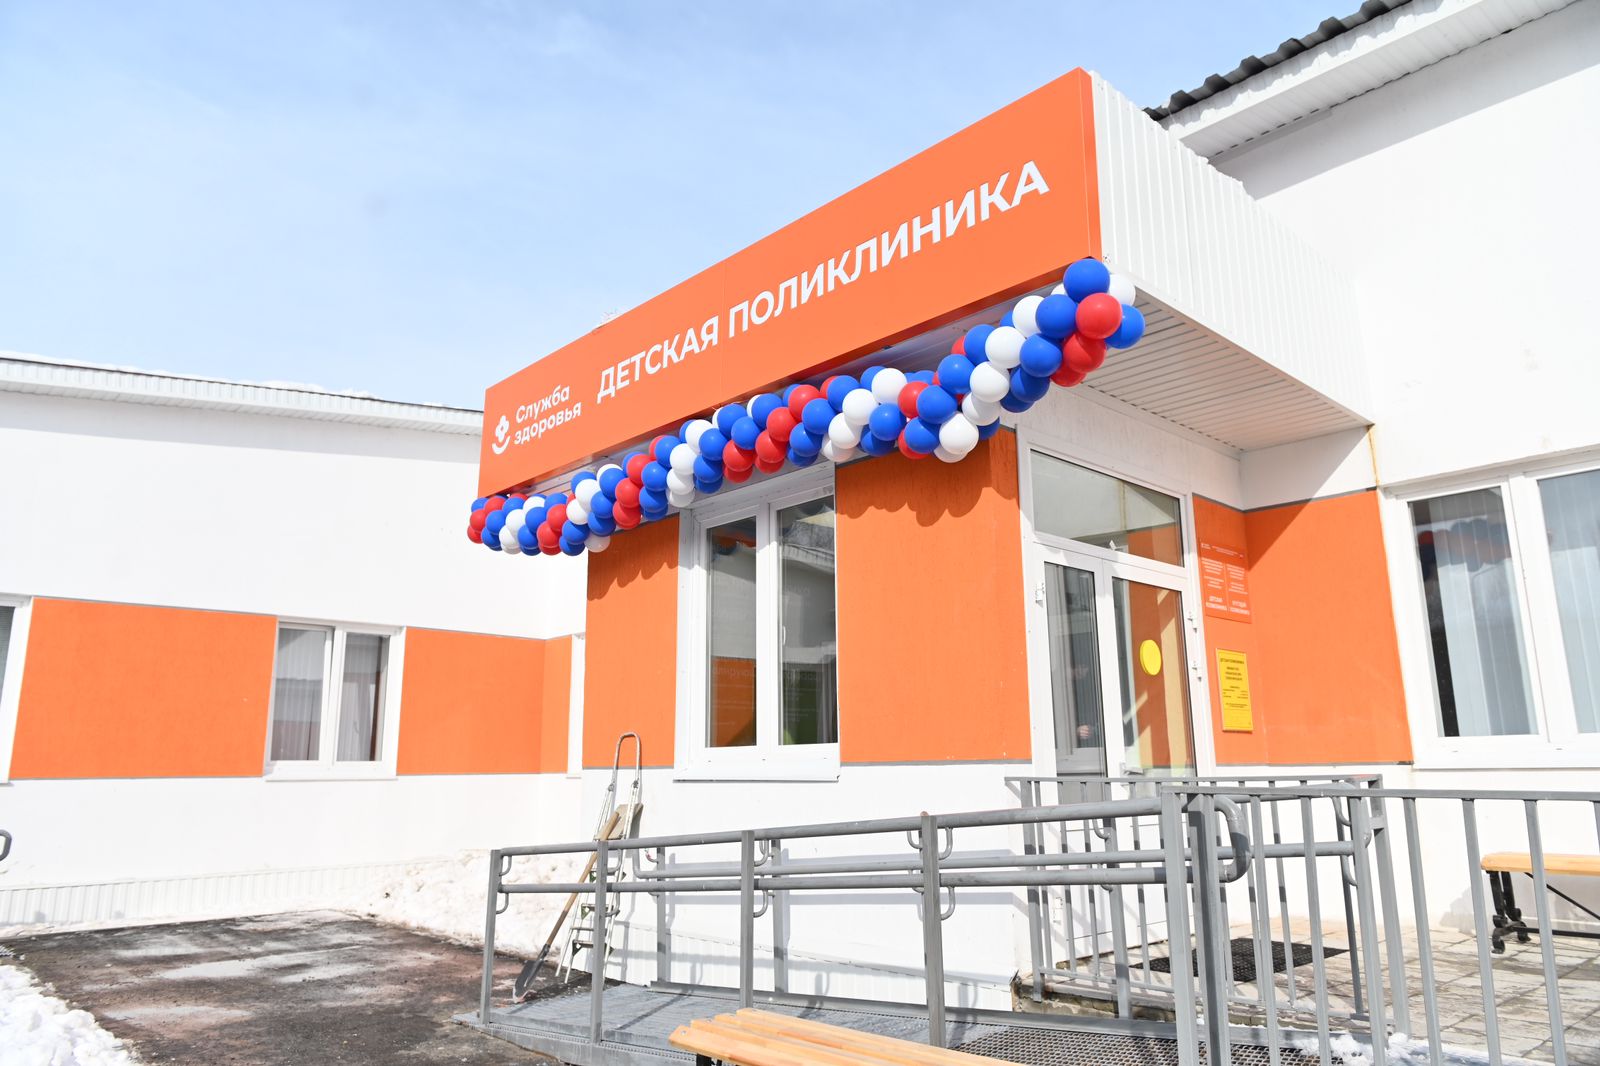 Новую детскую поликлинику по нацпроекту открыли в поселке Селенгинск Кабанского района